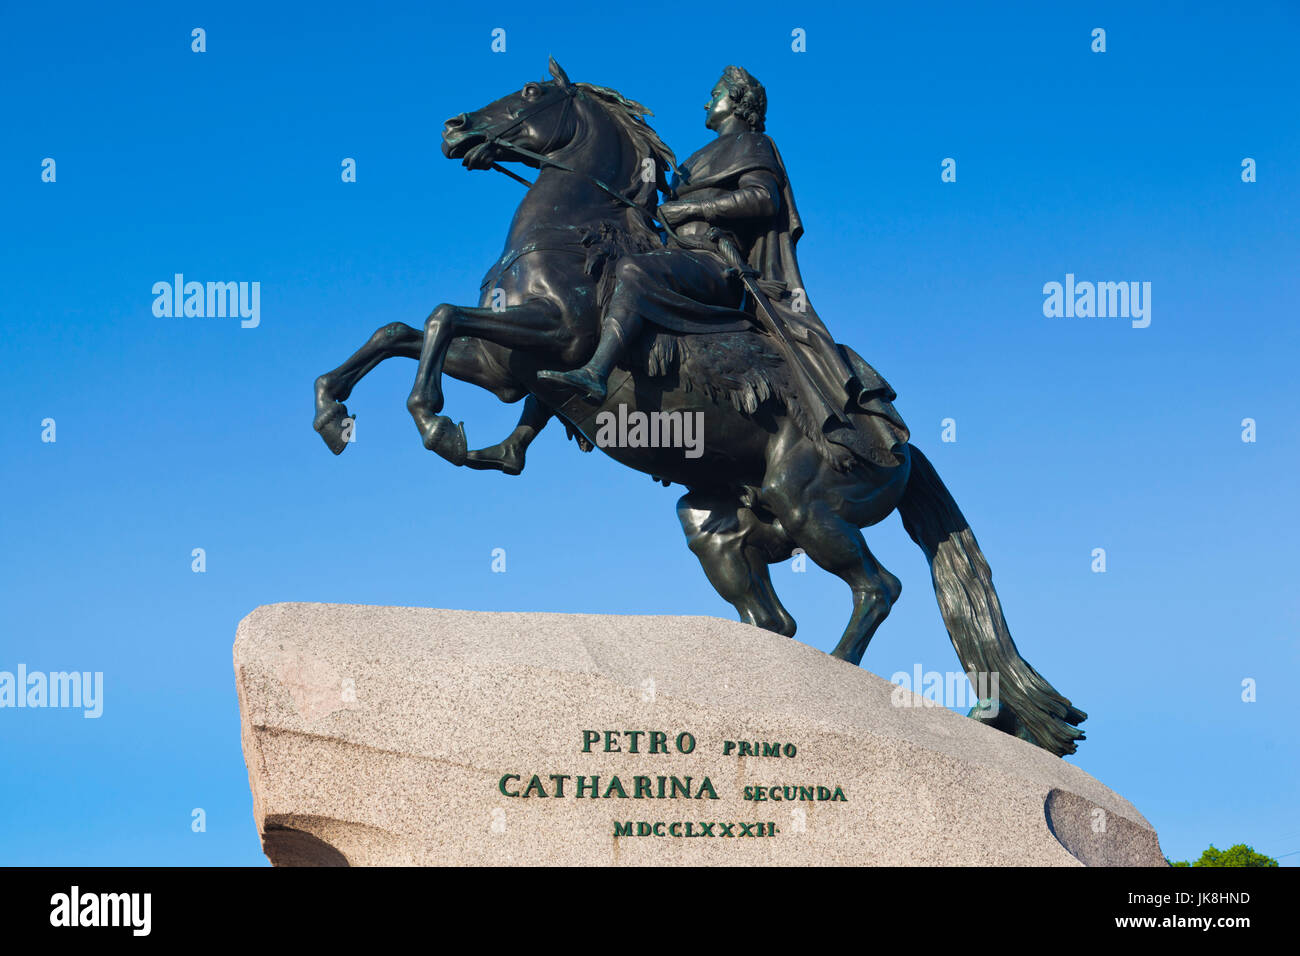 La Russie, Saint-Pétersbourg, Centre, Bronze Horseman statue du tsar Pierre le Grand, Jardins Alexandrovsky Banque D'Images